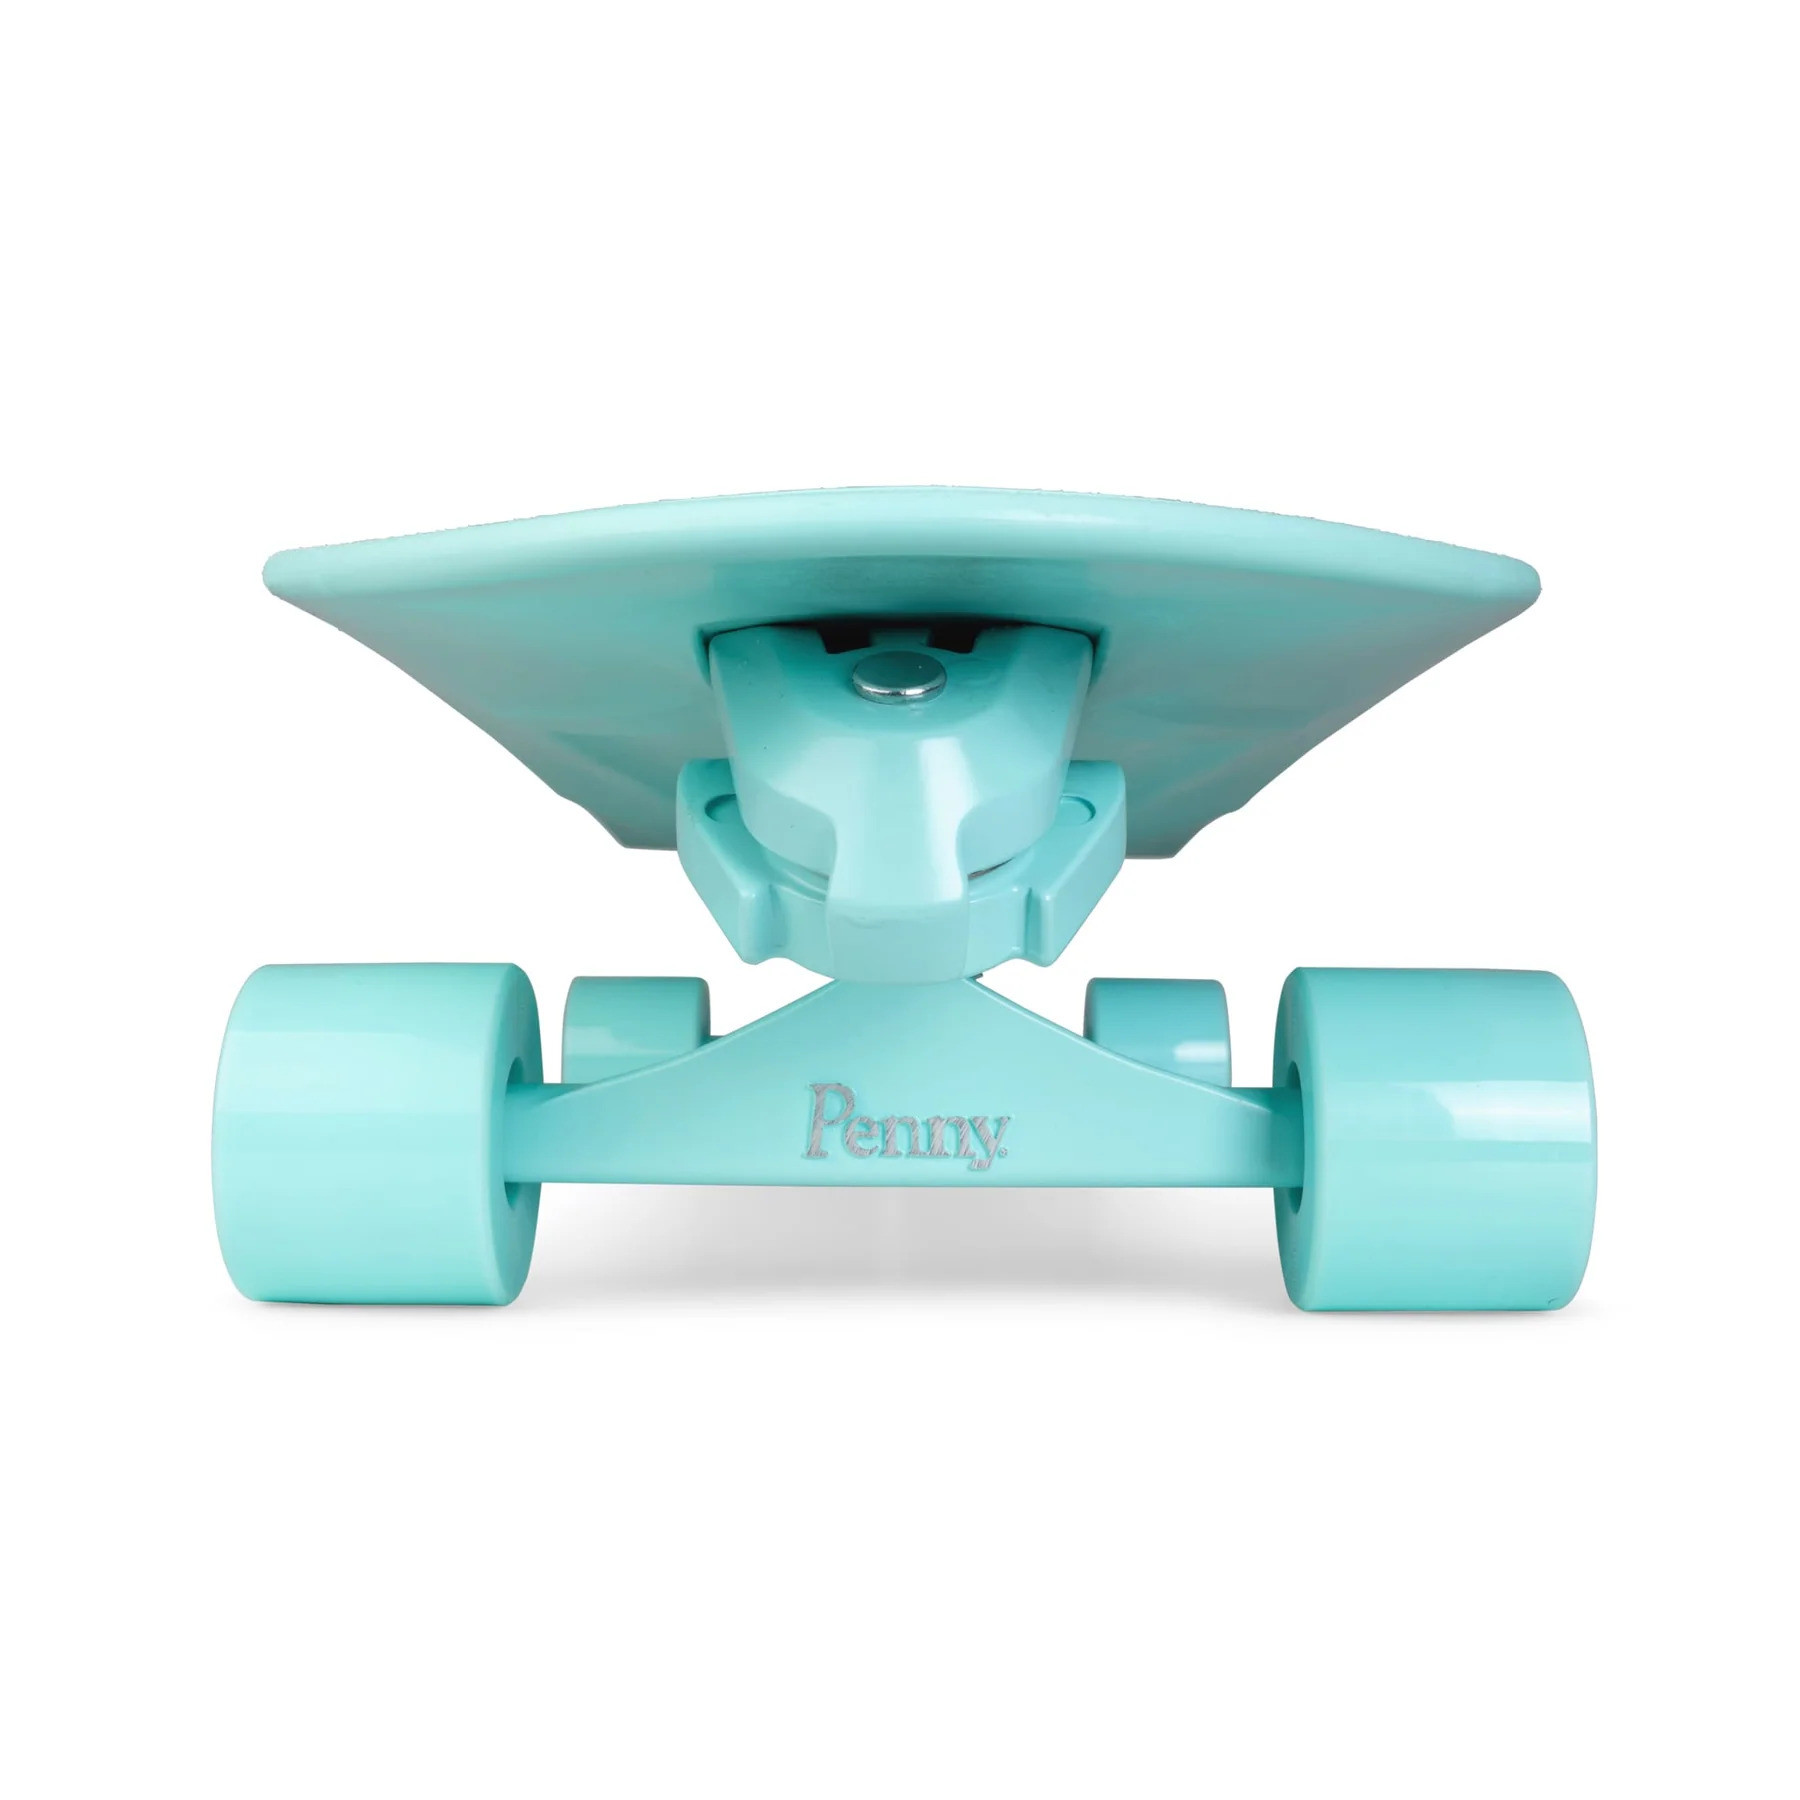 Penny x Waterborn Mint Surfskate - mint 7.5 x 29